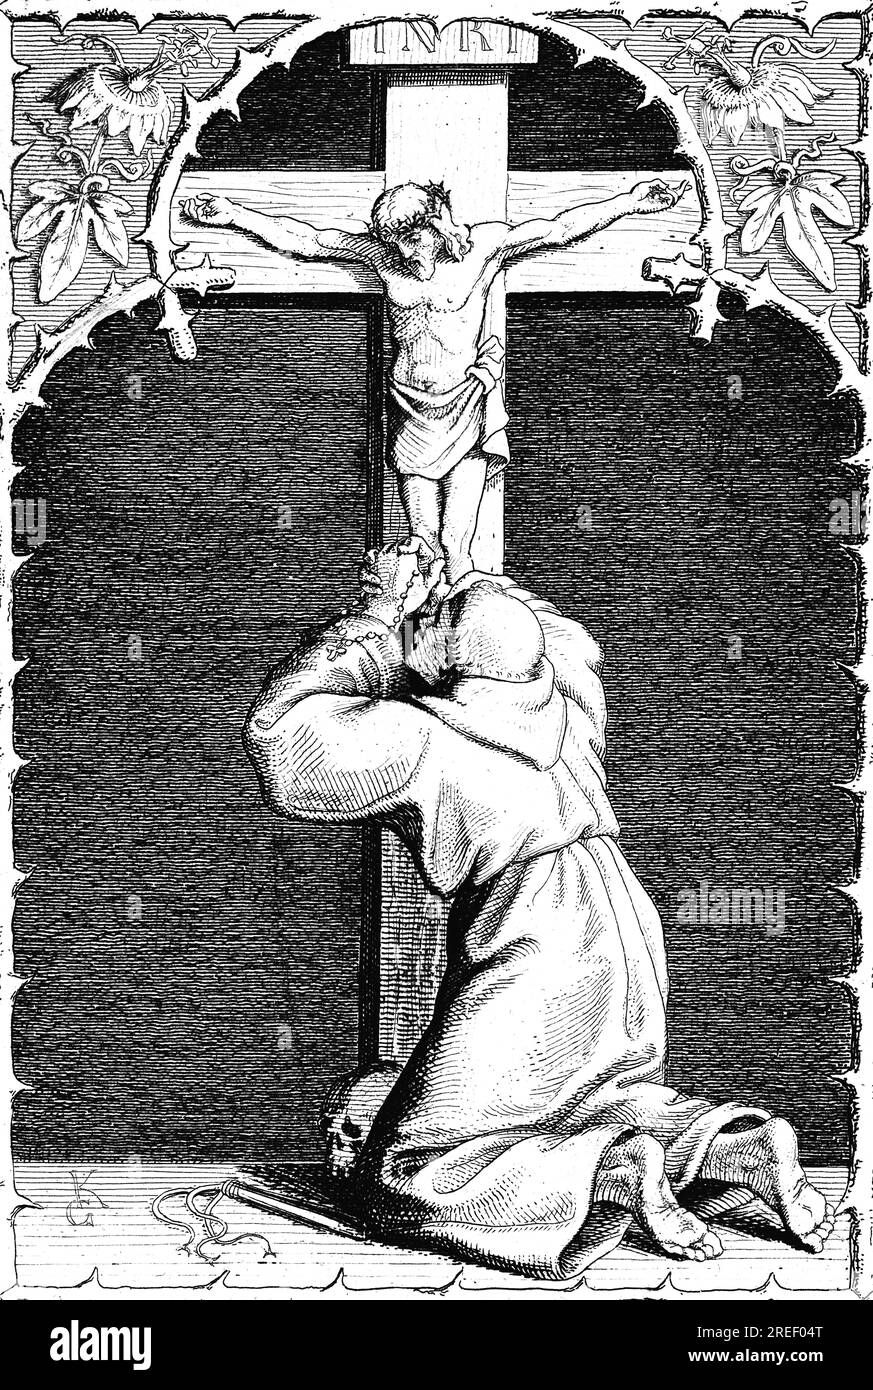 Martin Luther dans son auto-torture physique et mentale, Allemagne, INRI, inscription, crucifixion, Jésus, priez, âme, corps, pieds nus, 16e siècle Banque D'Images